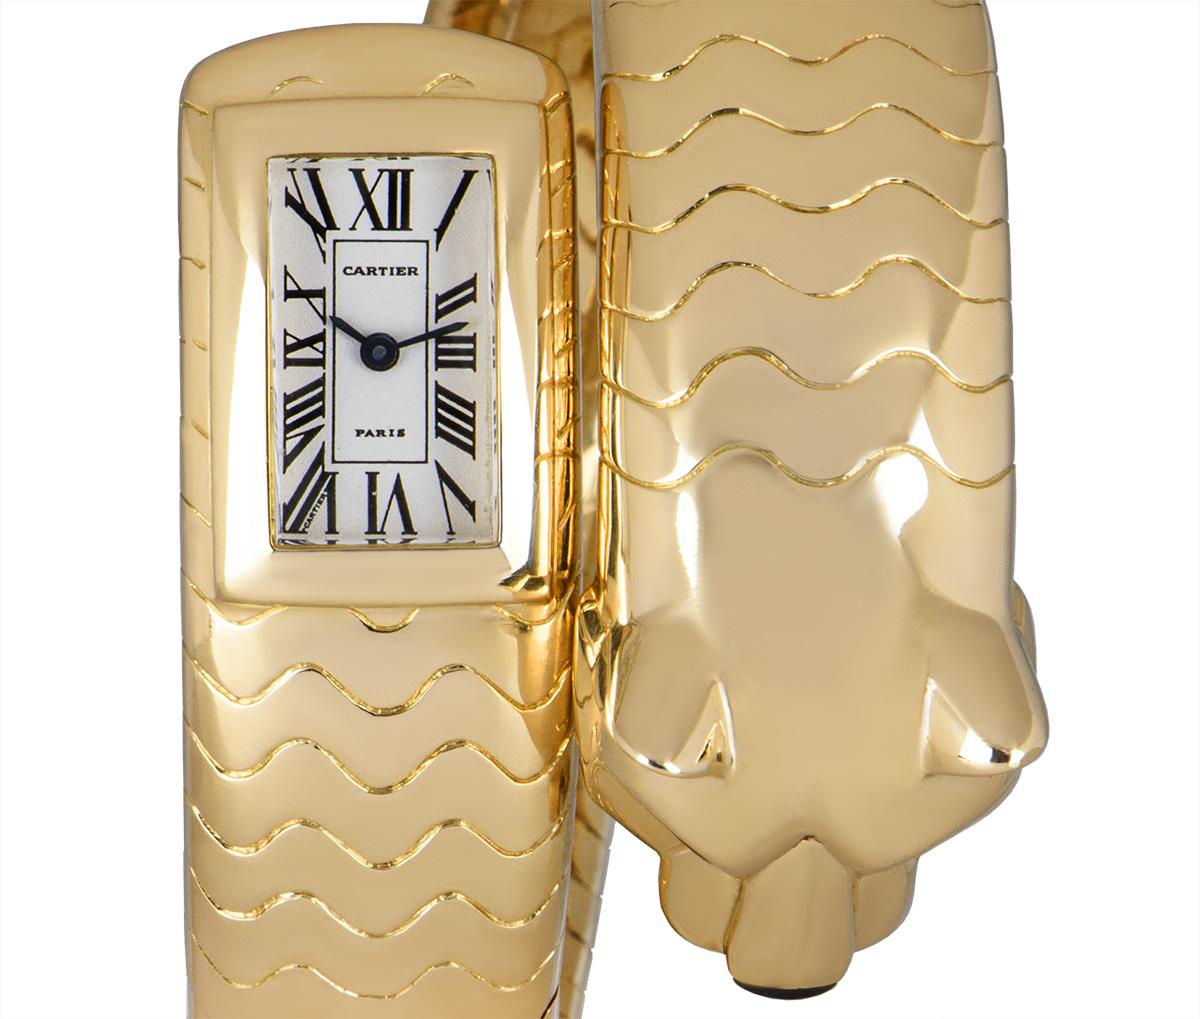 Mixed Cut Rare Cartier Panthere Figurative Lakarda Yellow Gold Emerald & Onyx Set Watch